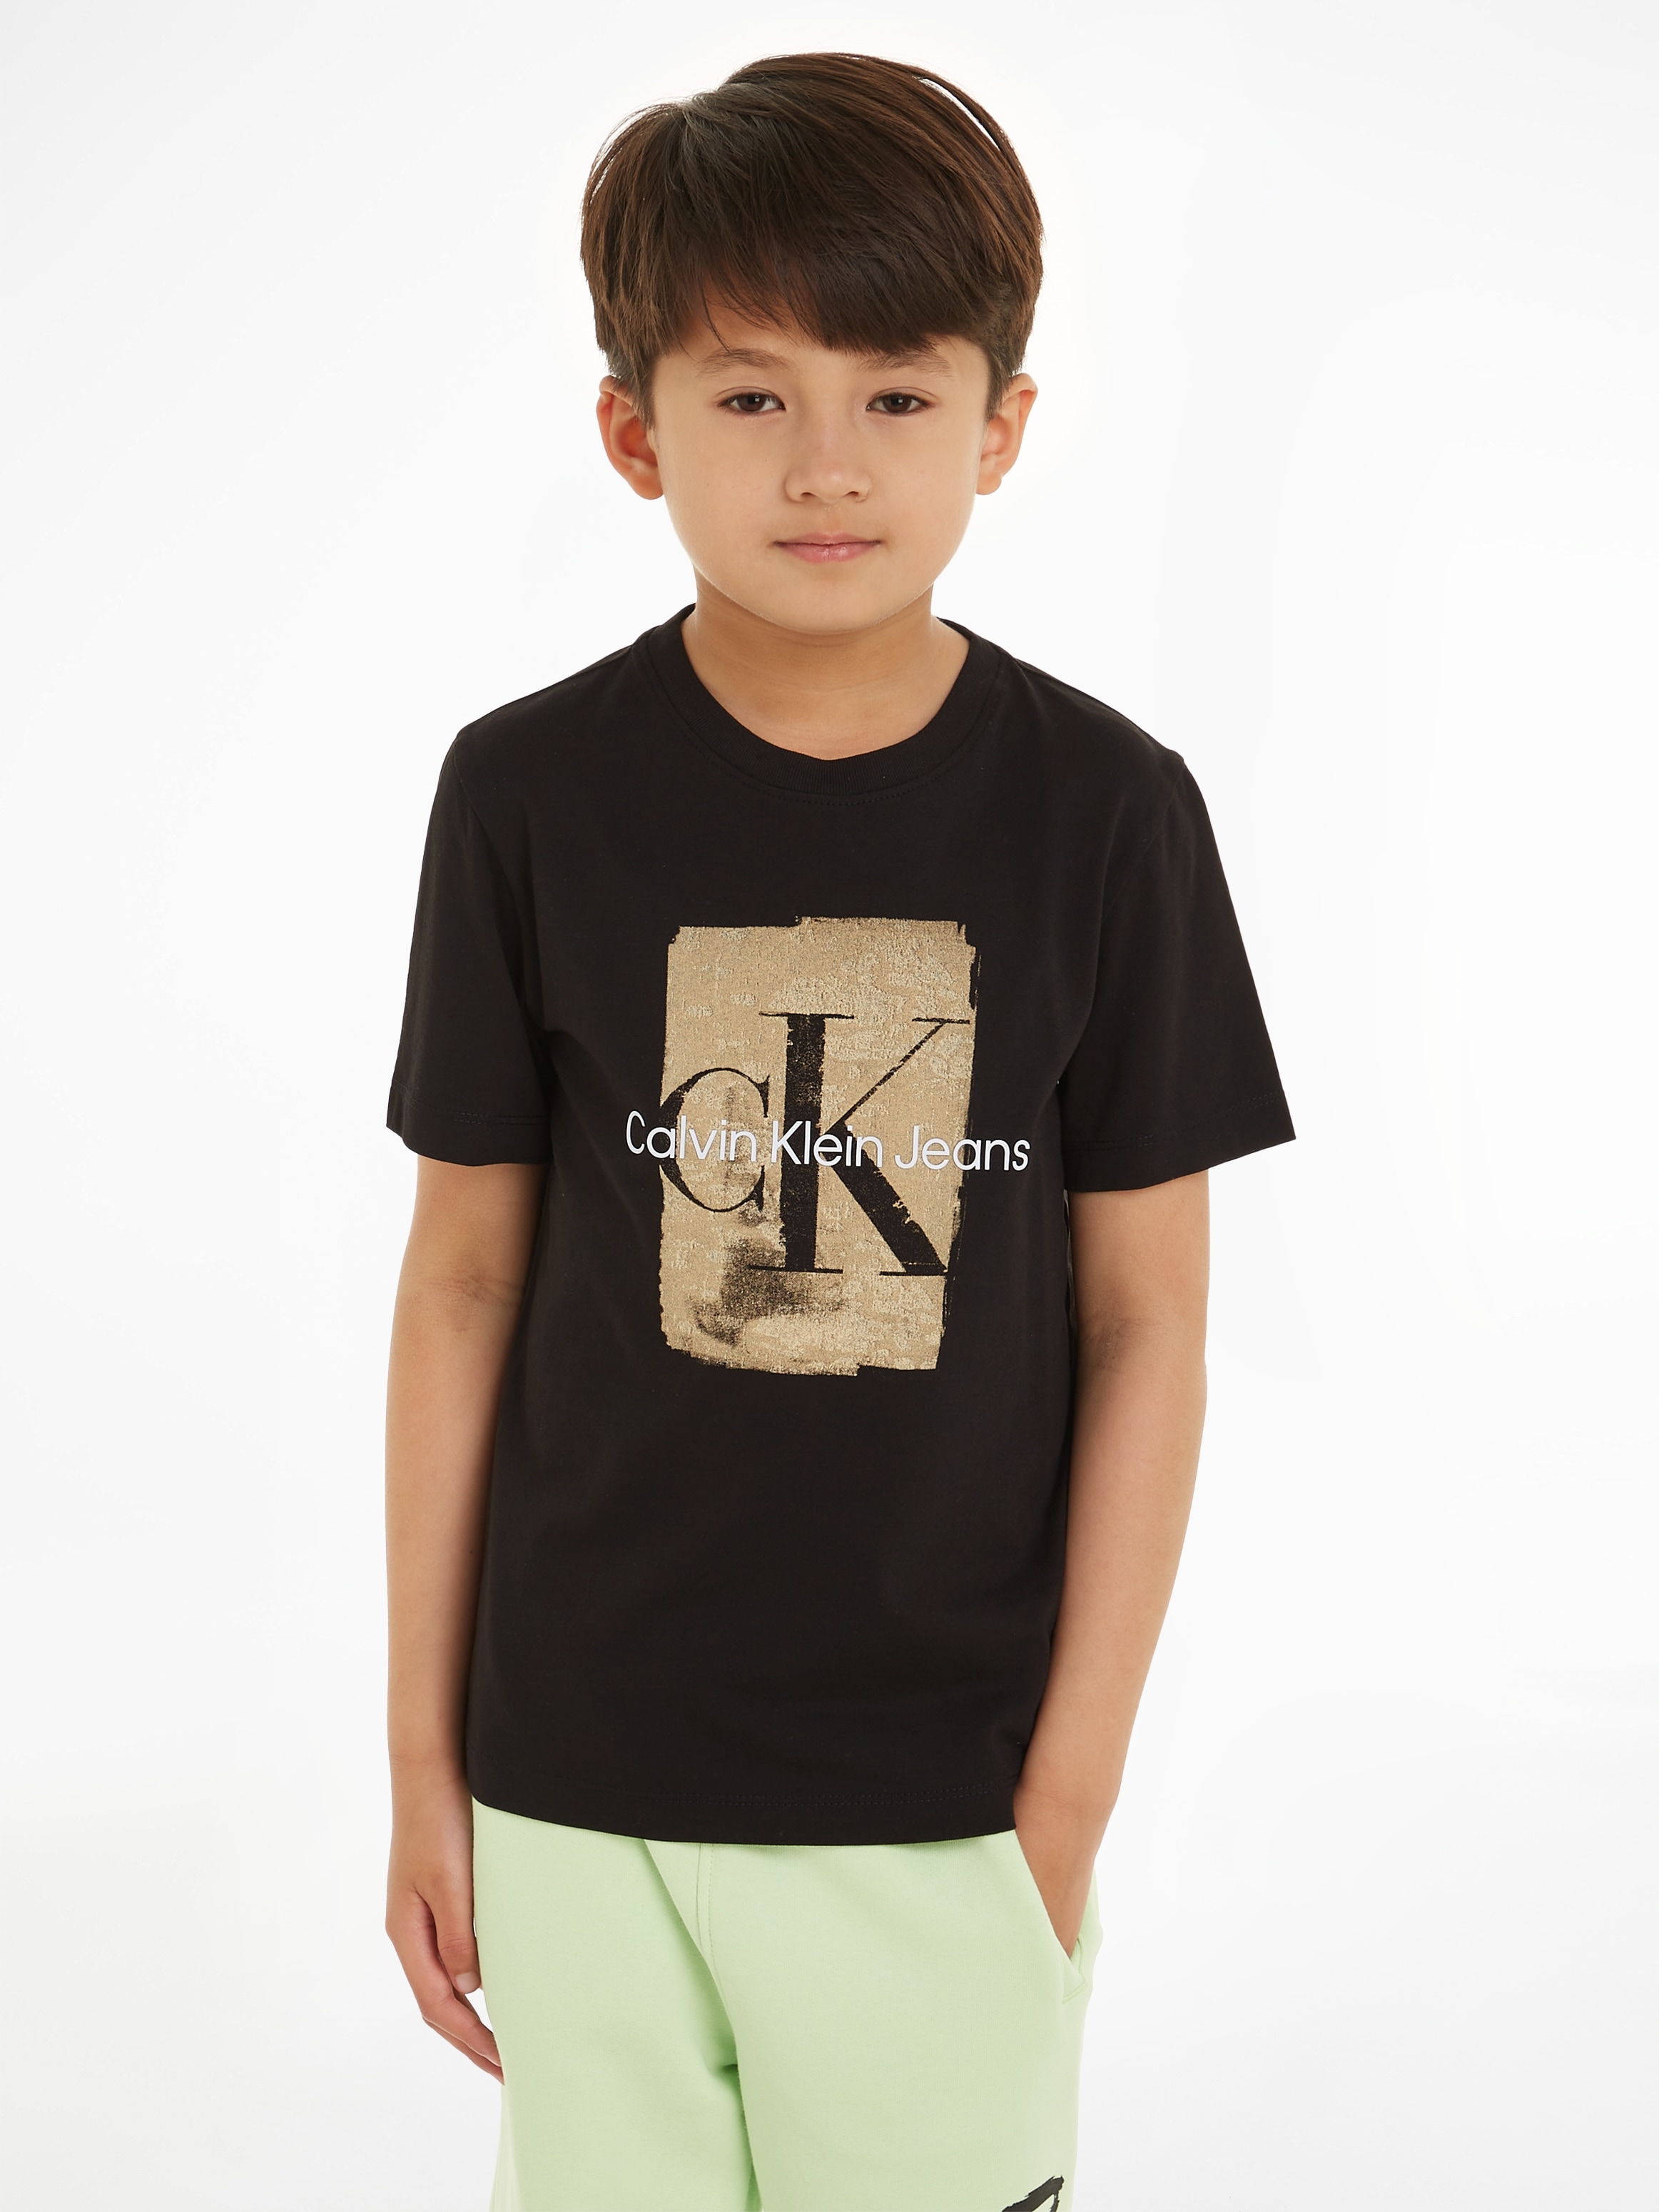 Calvin Klein Jeans T-Shirt T-SHIRT«, SKIN Kinder für PRINT 16 kaufen »SECOND | Jahre BAUR SS bis